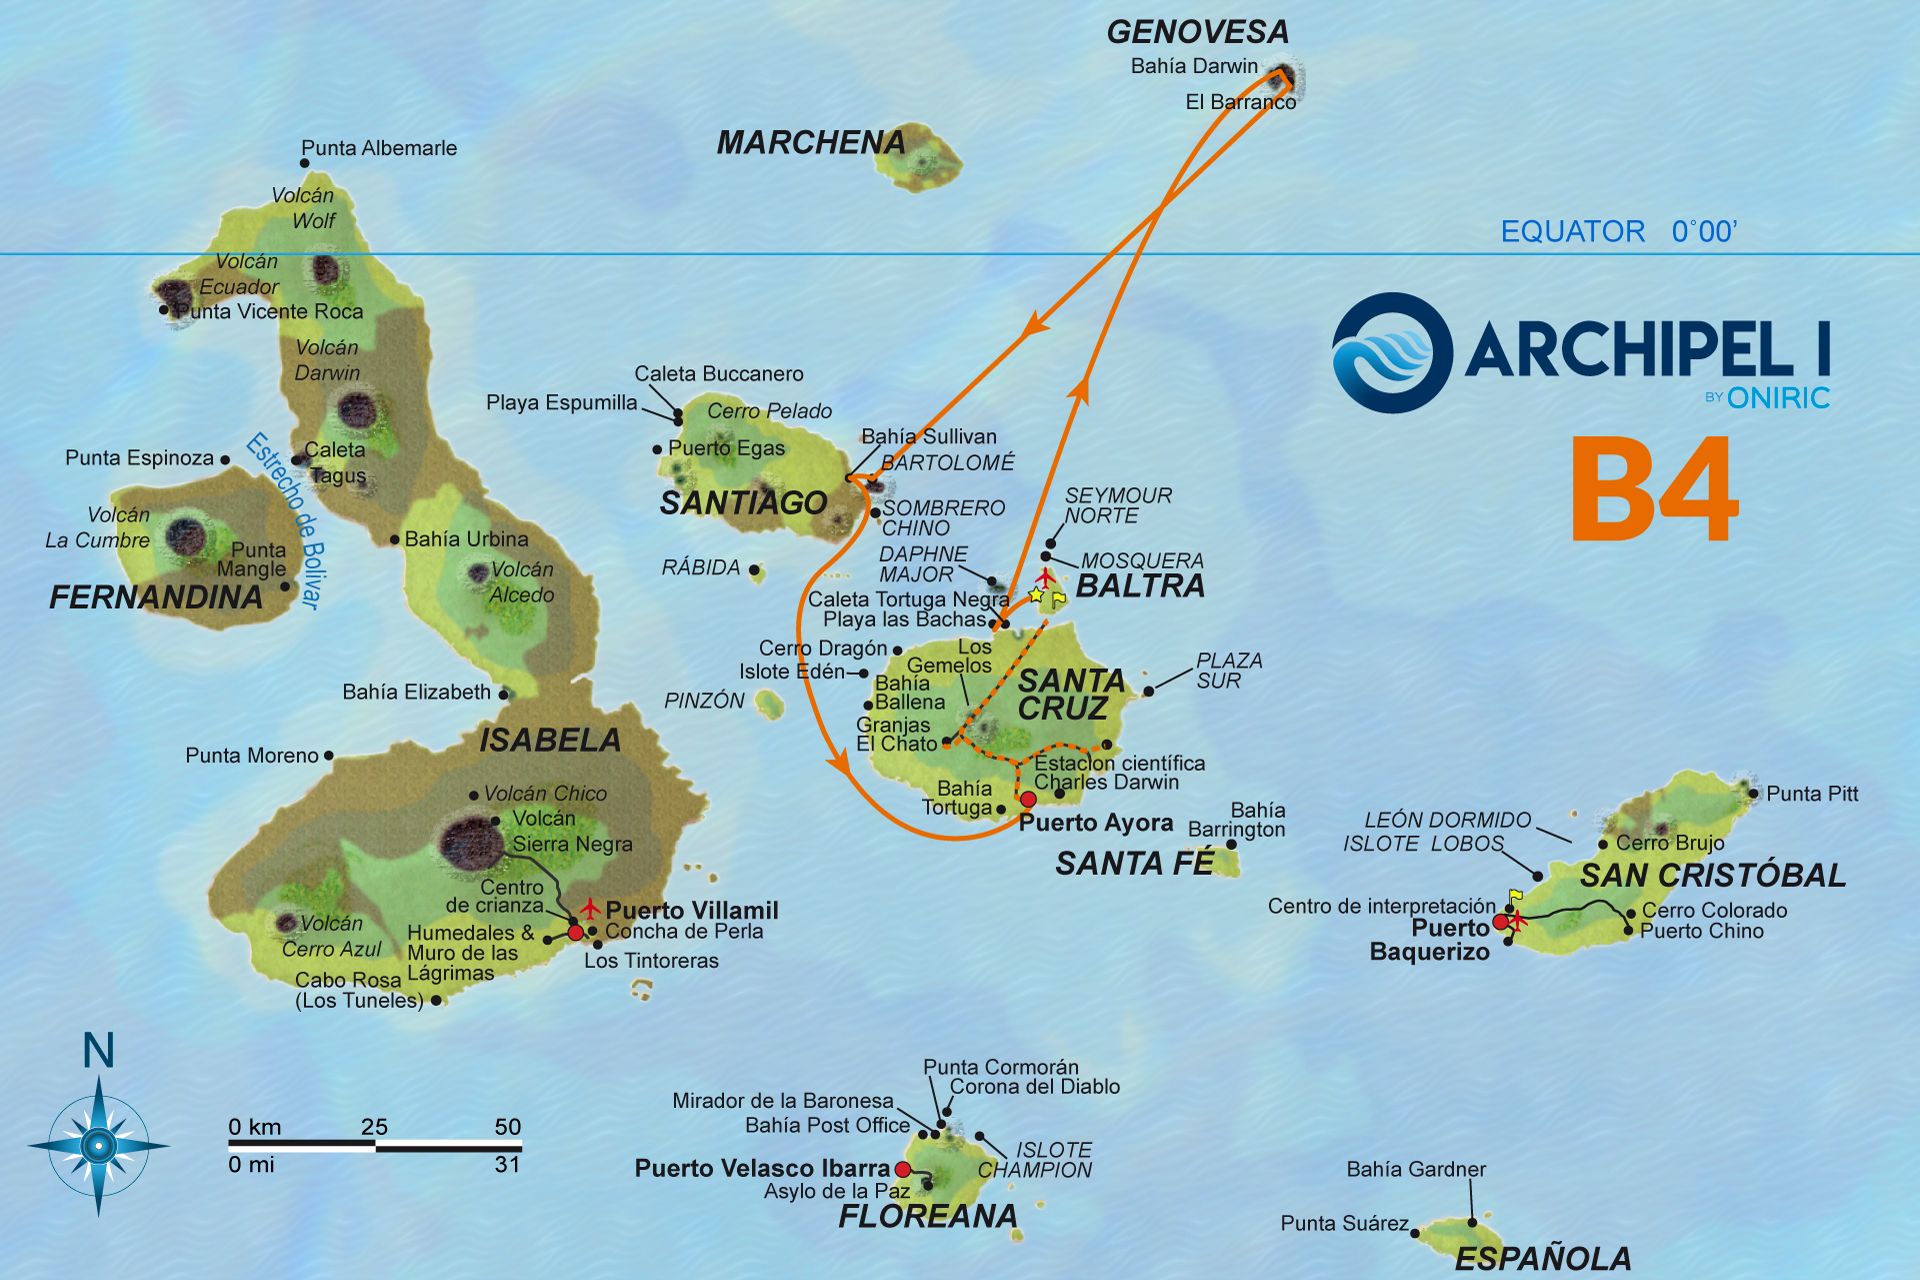 galapagos-mapa-archipel-1-B4-oniric